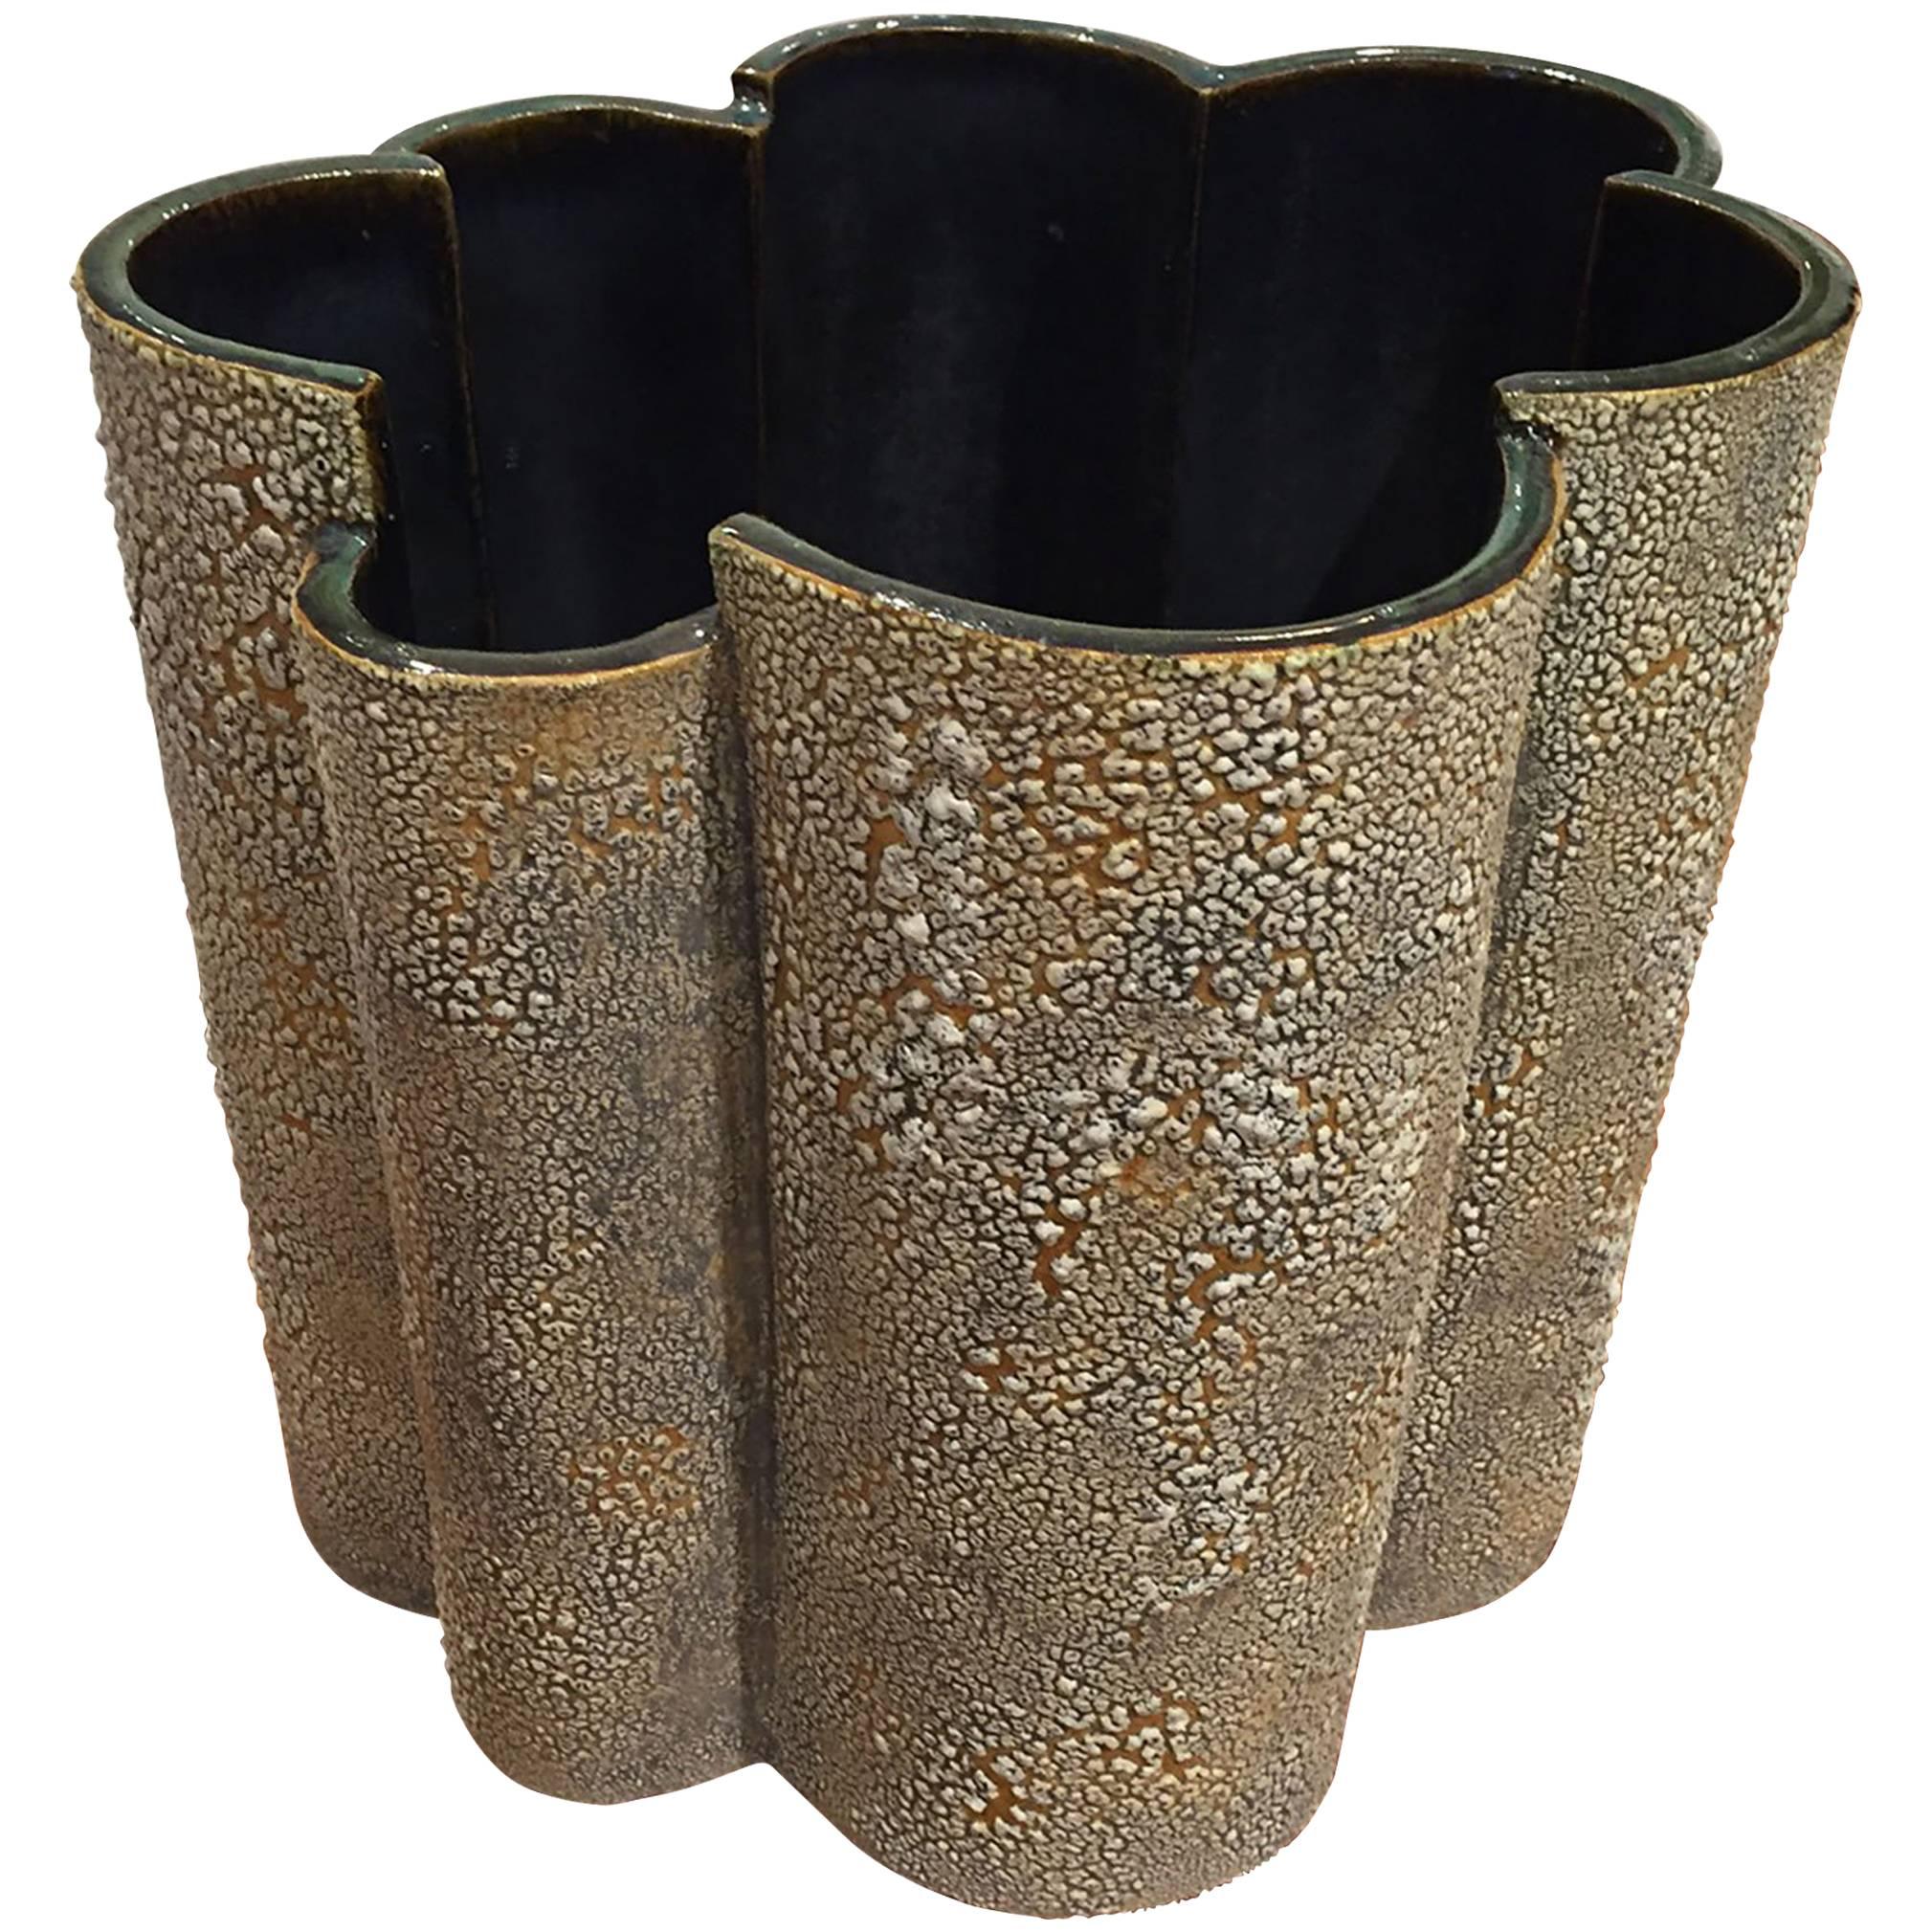 Vase/planteur en écorce texturée de style américain d'après-guerre, avec des formes festonnées. (signé : GARY DI PASQUALE)
